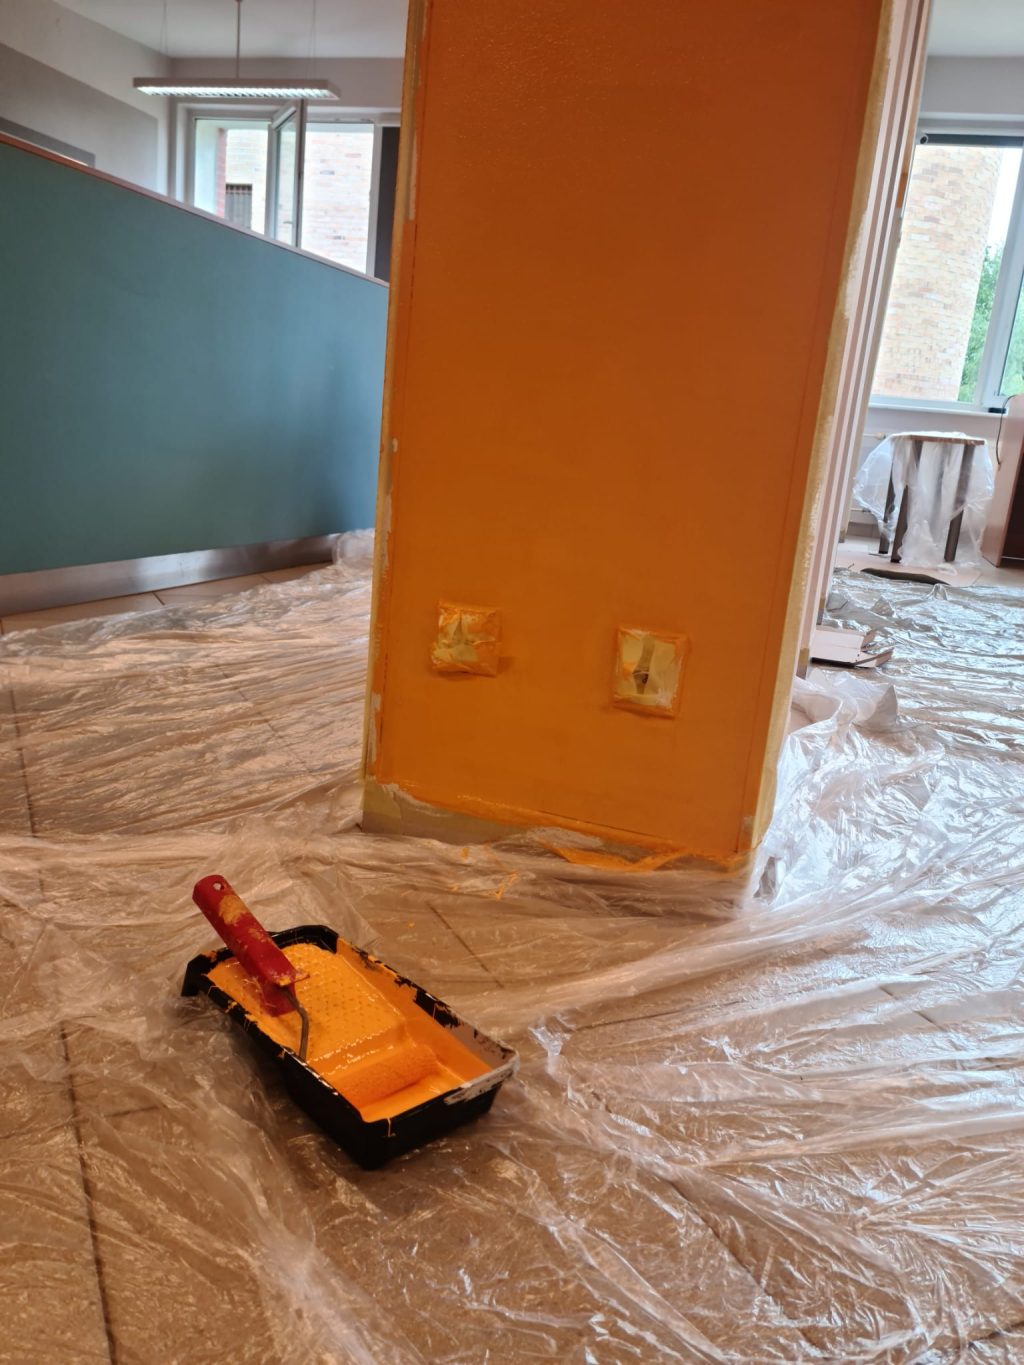 Widok na remontowaną salę - w tle niskie niebieskie ścianki tzw. boxów. Na pierwszym planie fragment ściany pomalowanej na pomarańczowo, na podłodze rozłożona folia malarska i narzędzia malarskie.